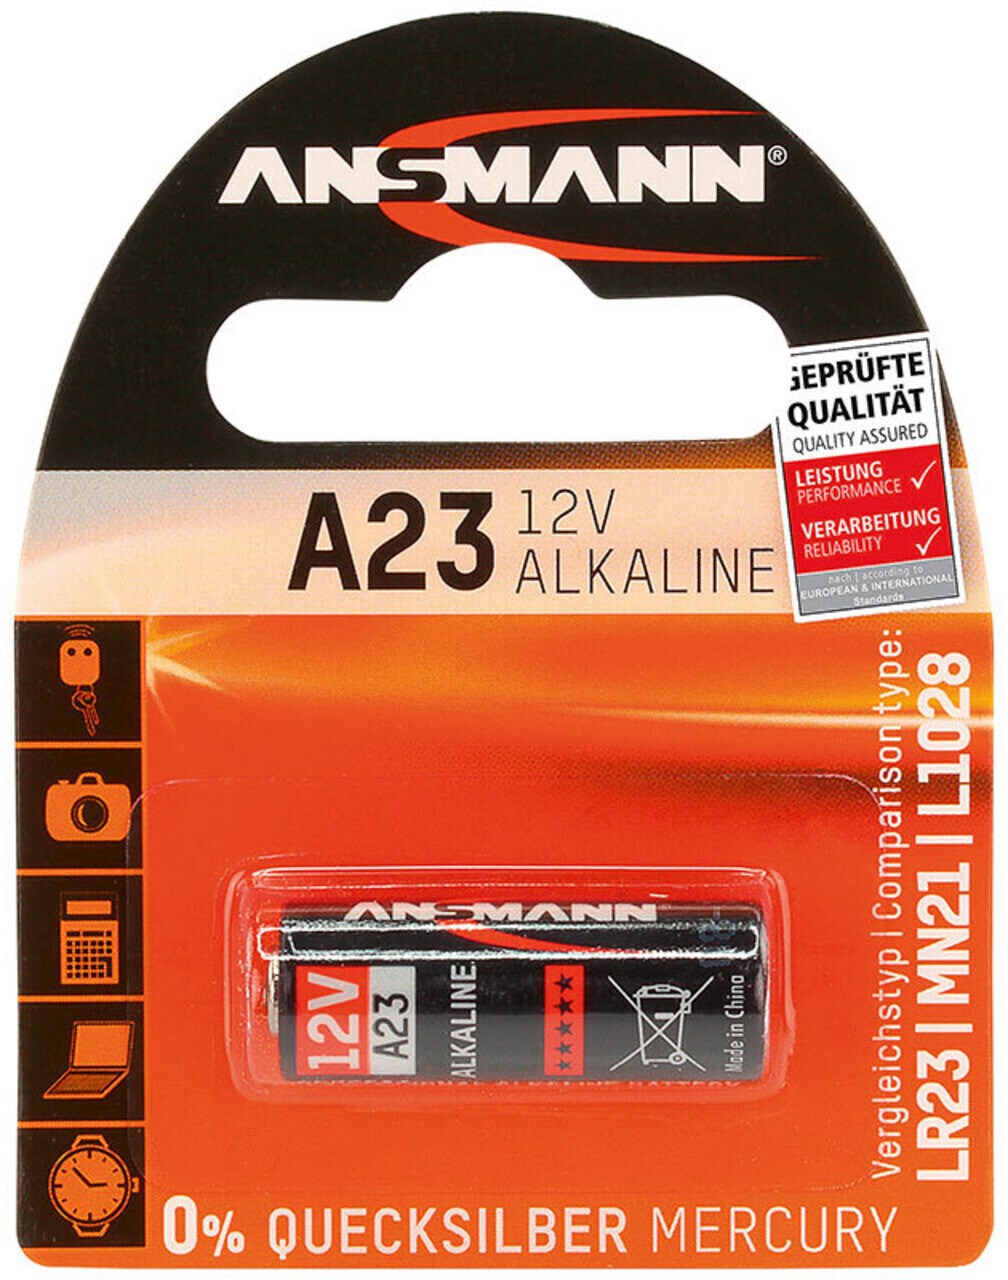 GP 23A: Alkaline Batterie, 23 A, 1er-Pack bei reichelt elektronik